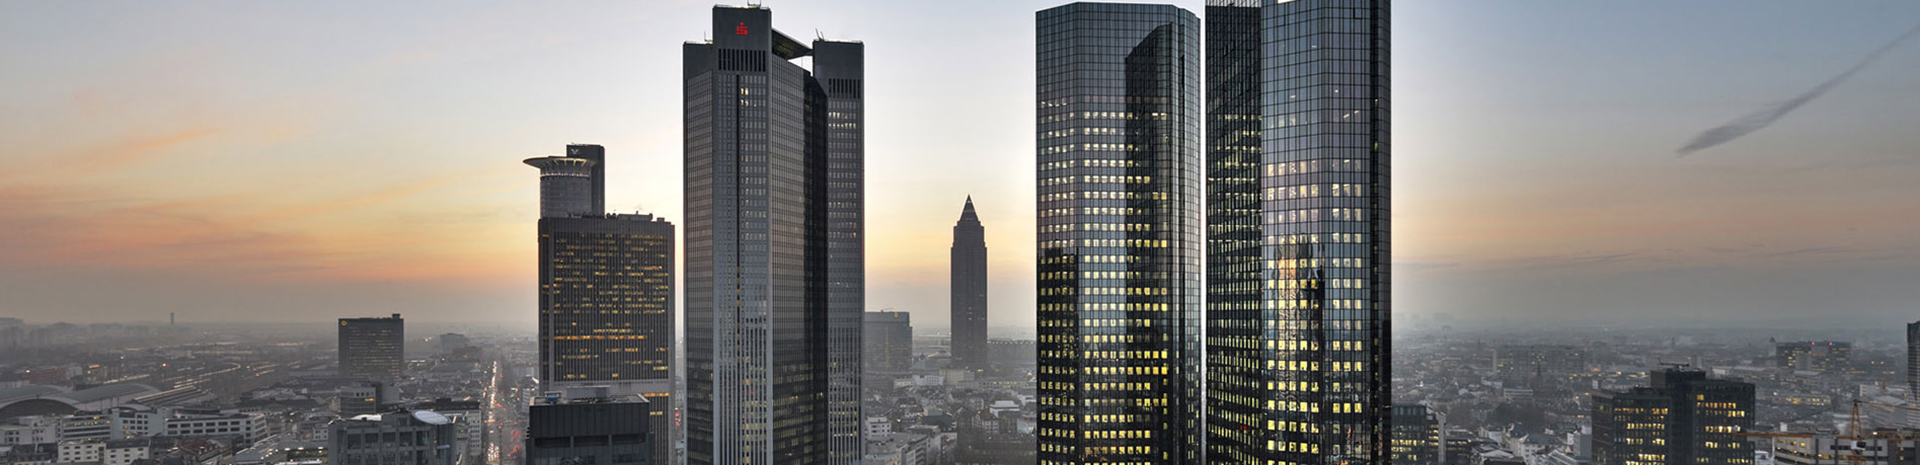 DB Towers, Frankfurt